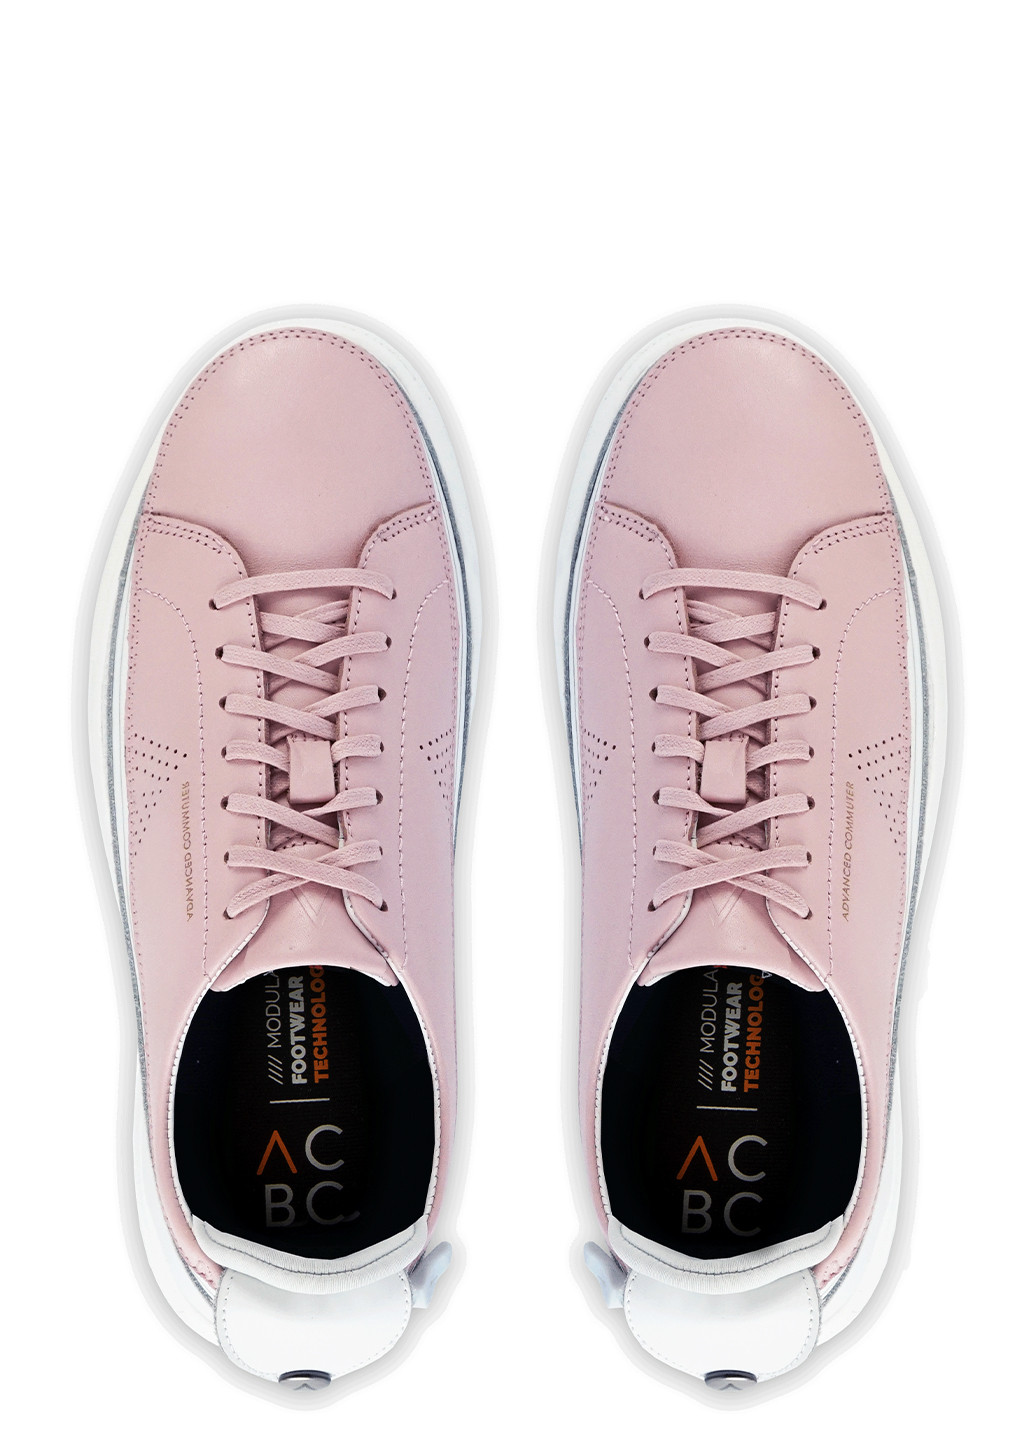 Цветные демисезонные женские кроссовки ACBC URBAN LIGHT